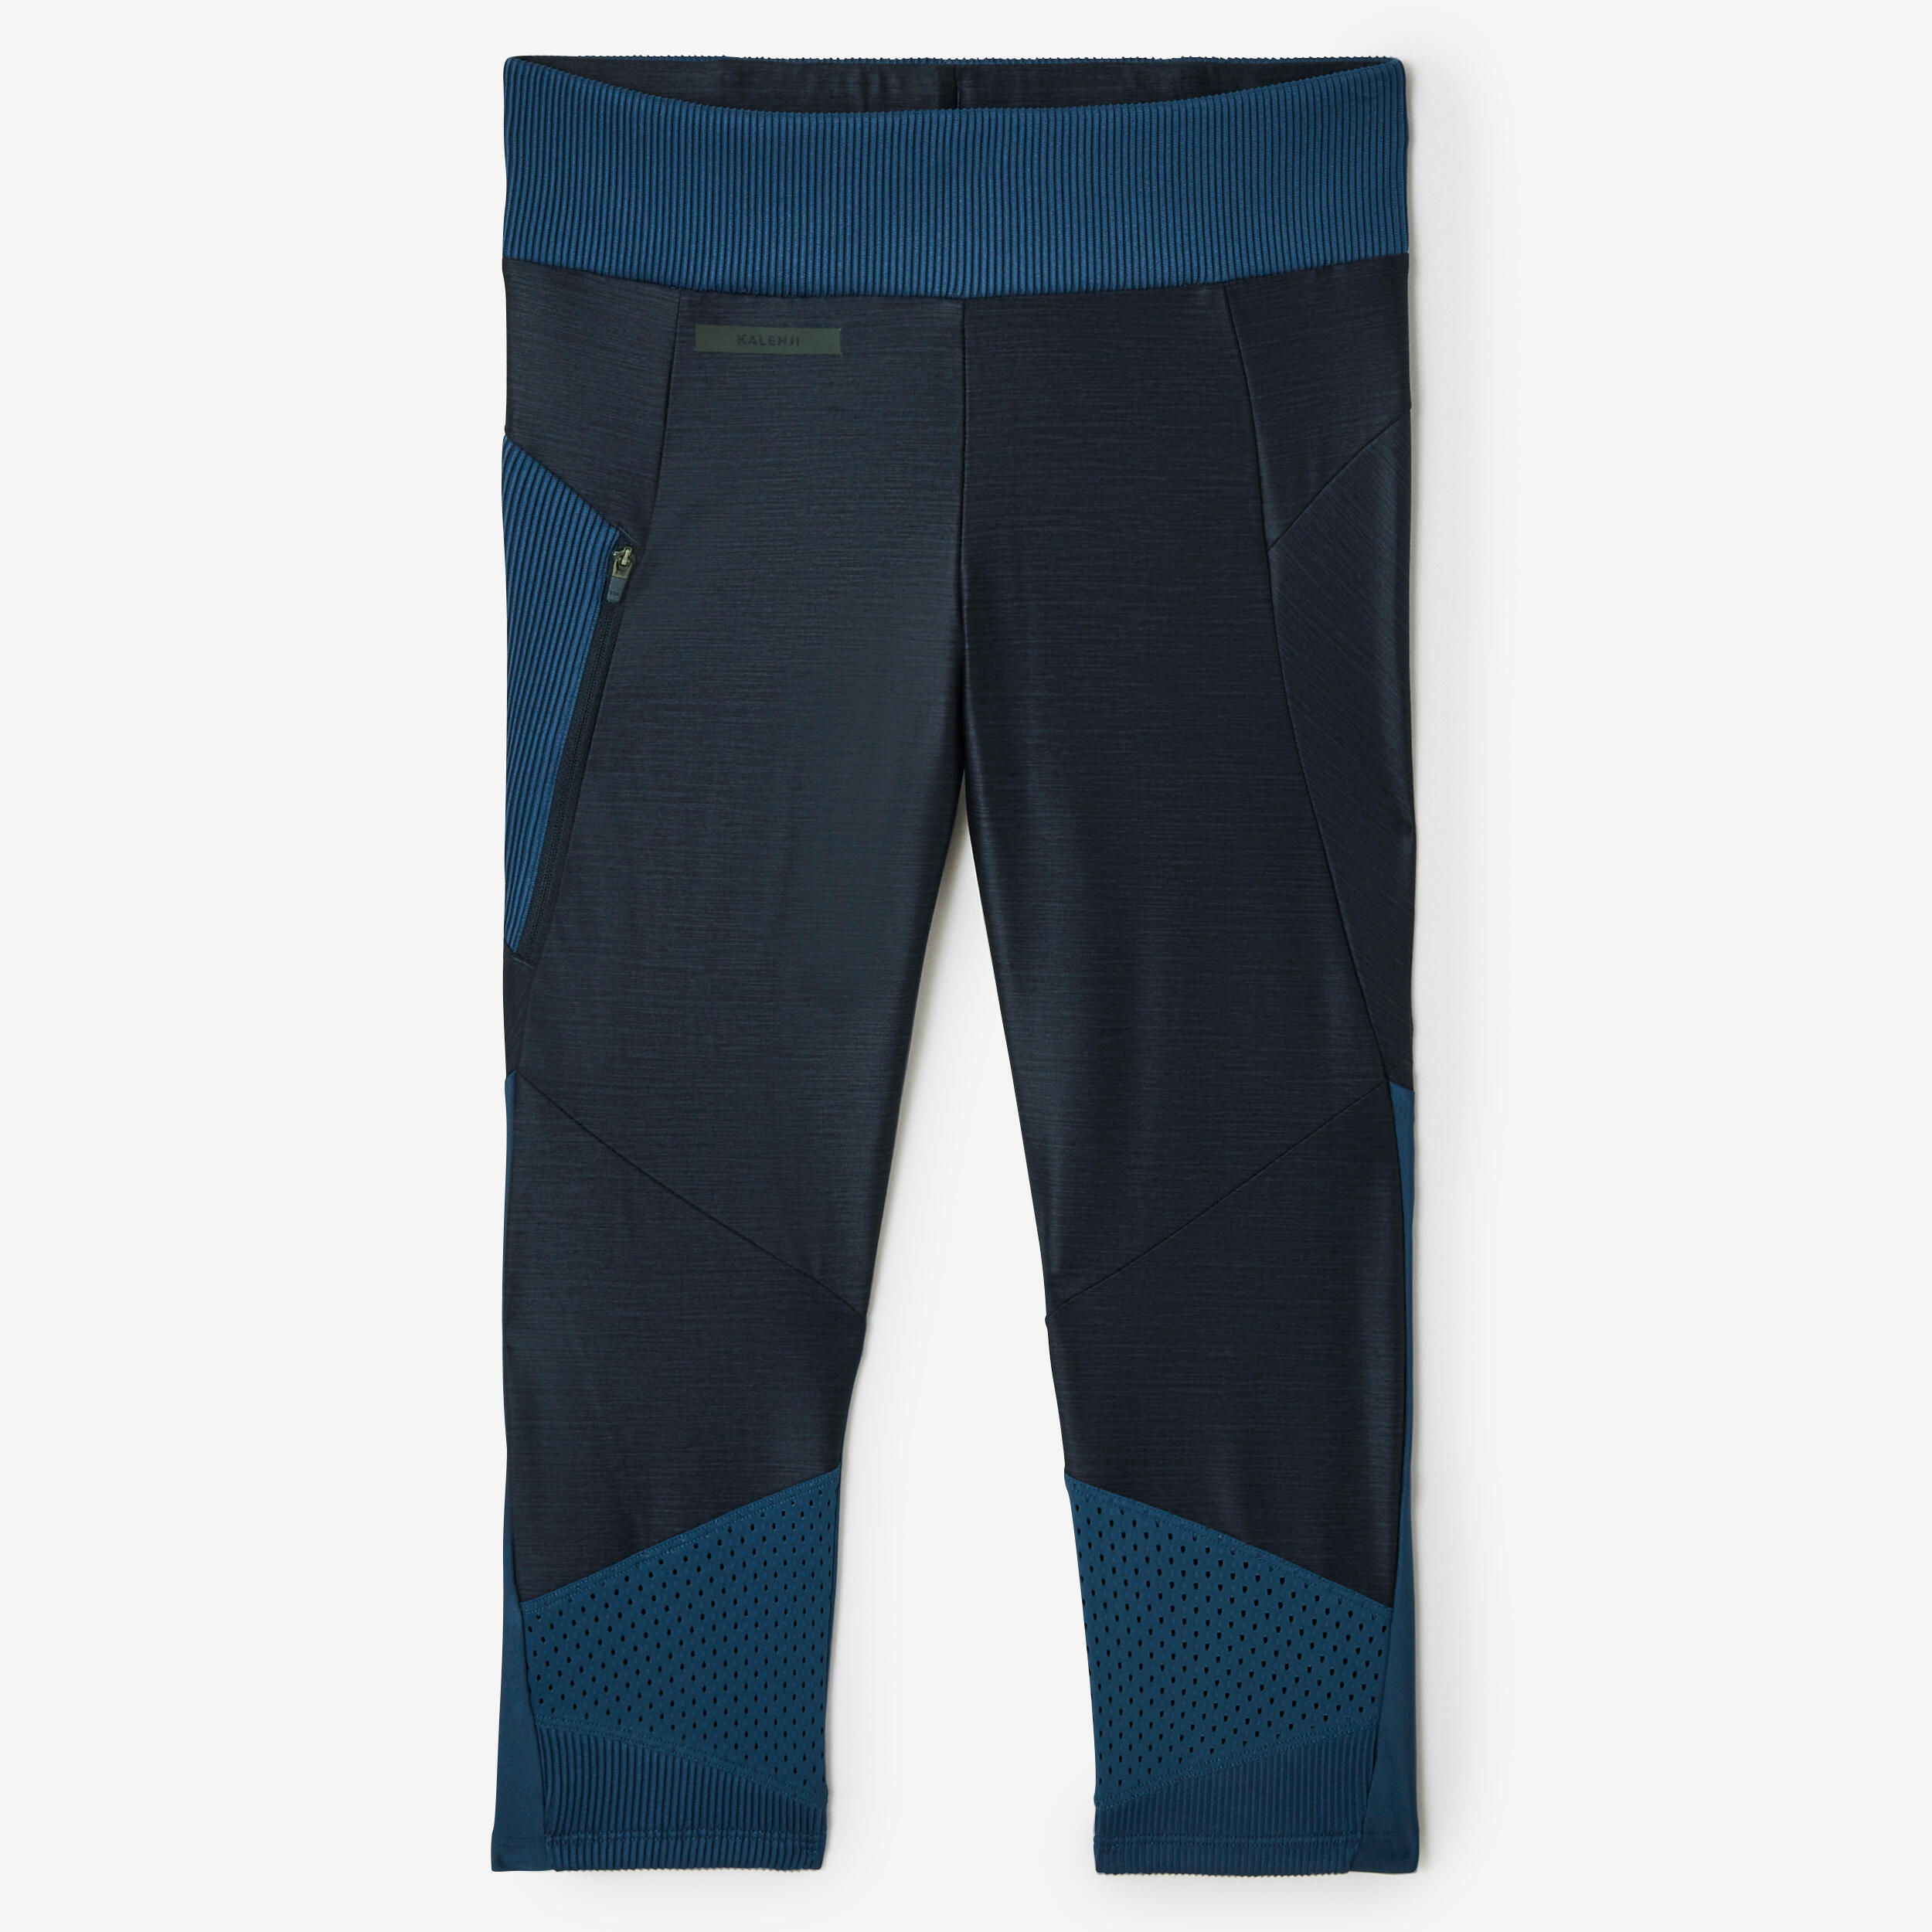 Women's short breathable running leggings Dry+ Feel - blue 1/7